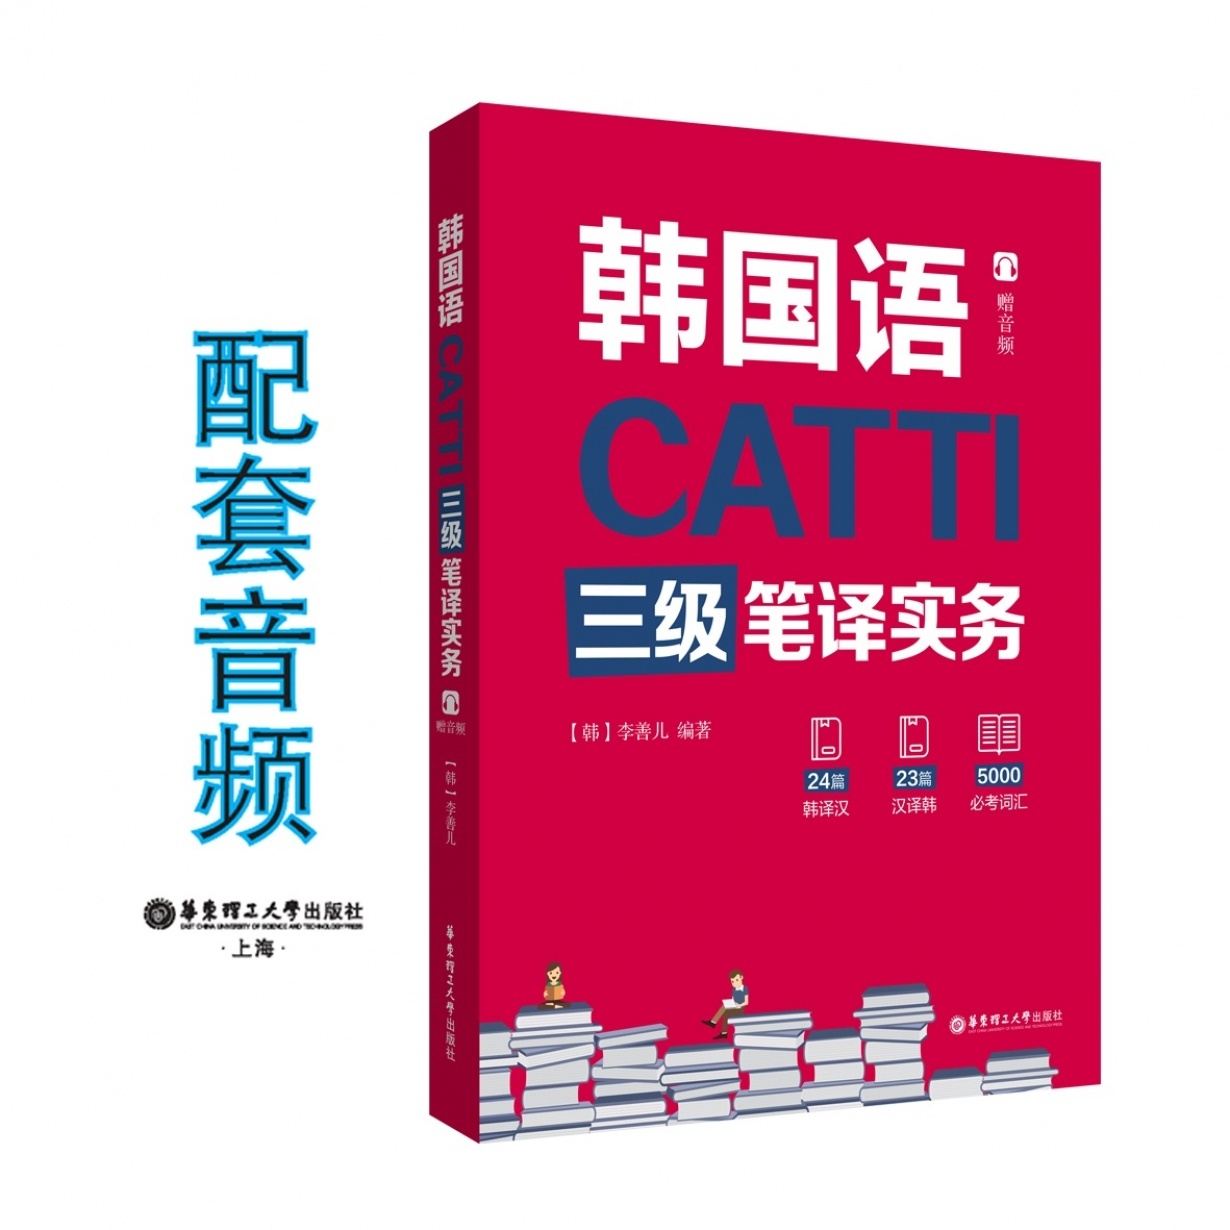 CATTI韩国语三级笔译实务.mp3